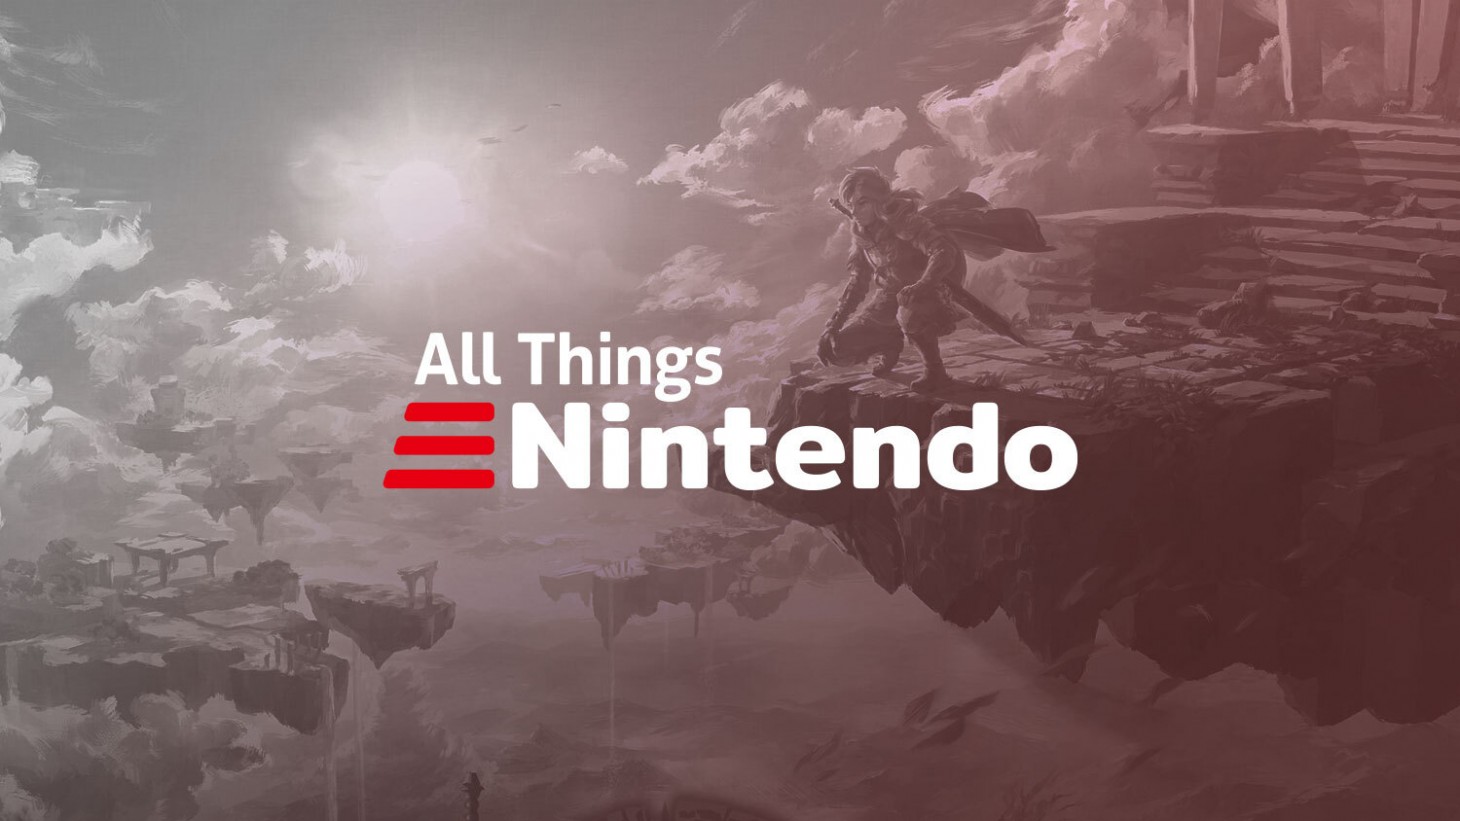 Nintendo Direct Recap, Danny Peña Interview, Reiner's Top Stories From GI